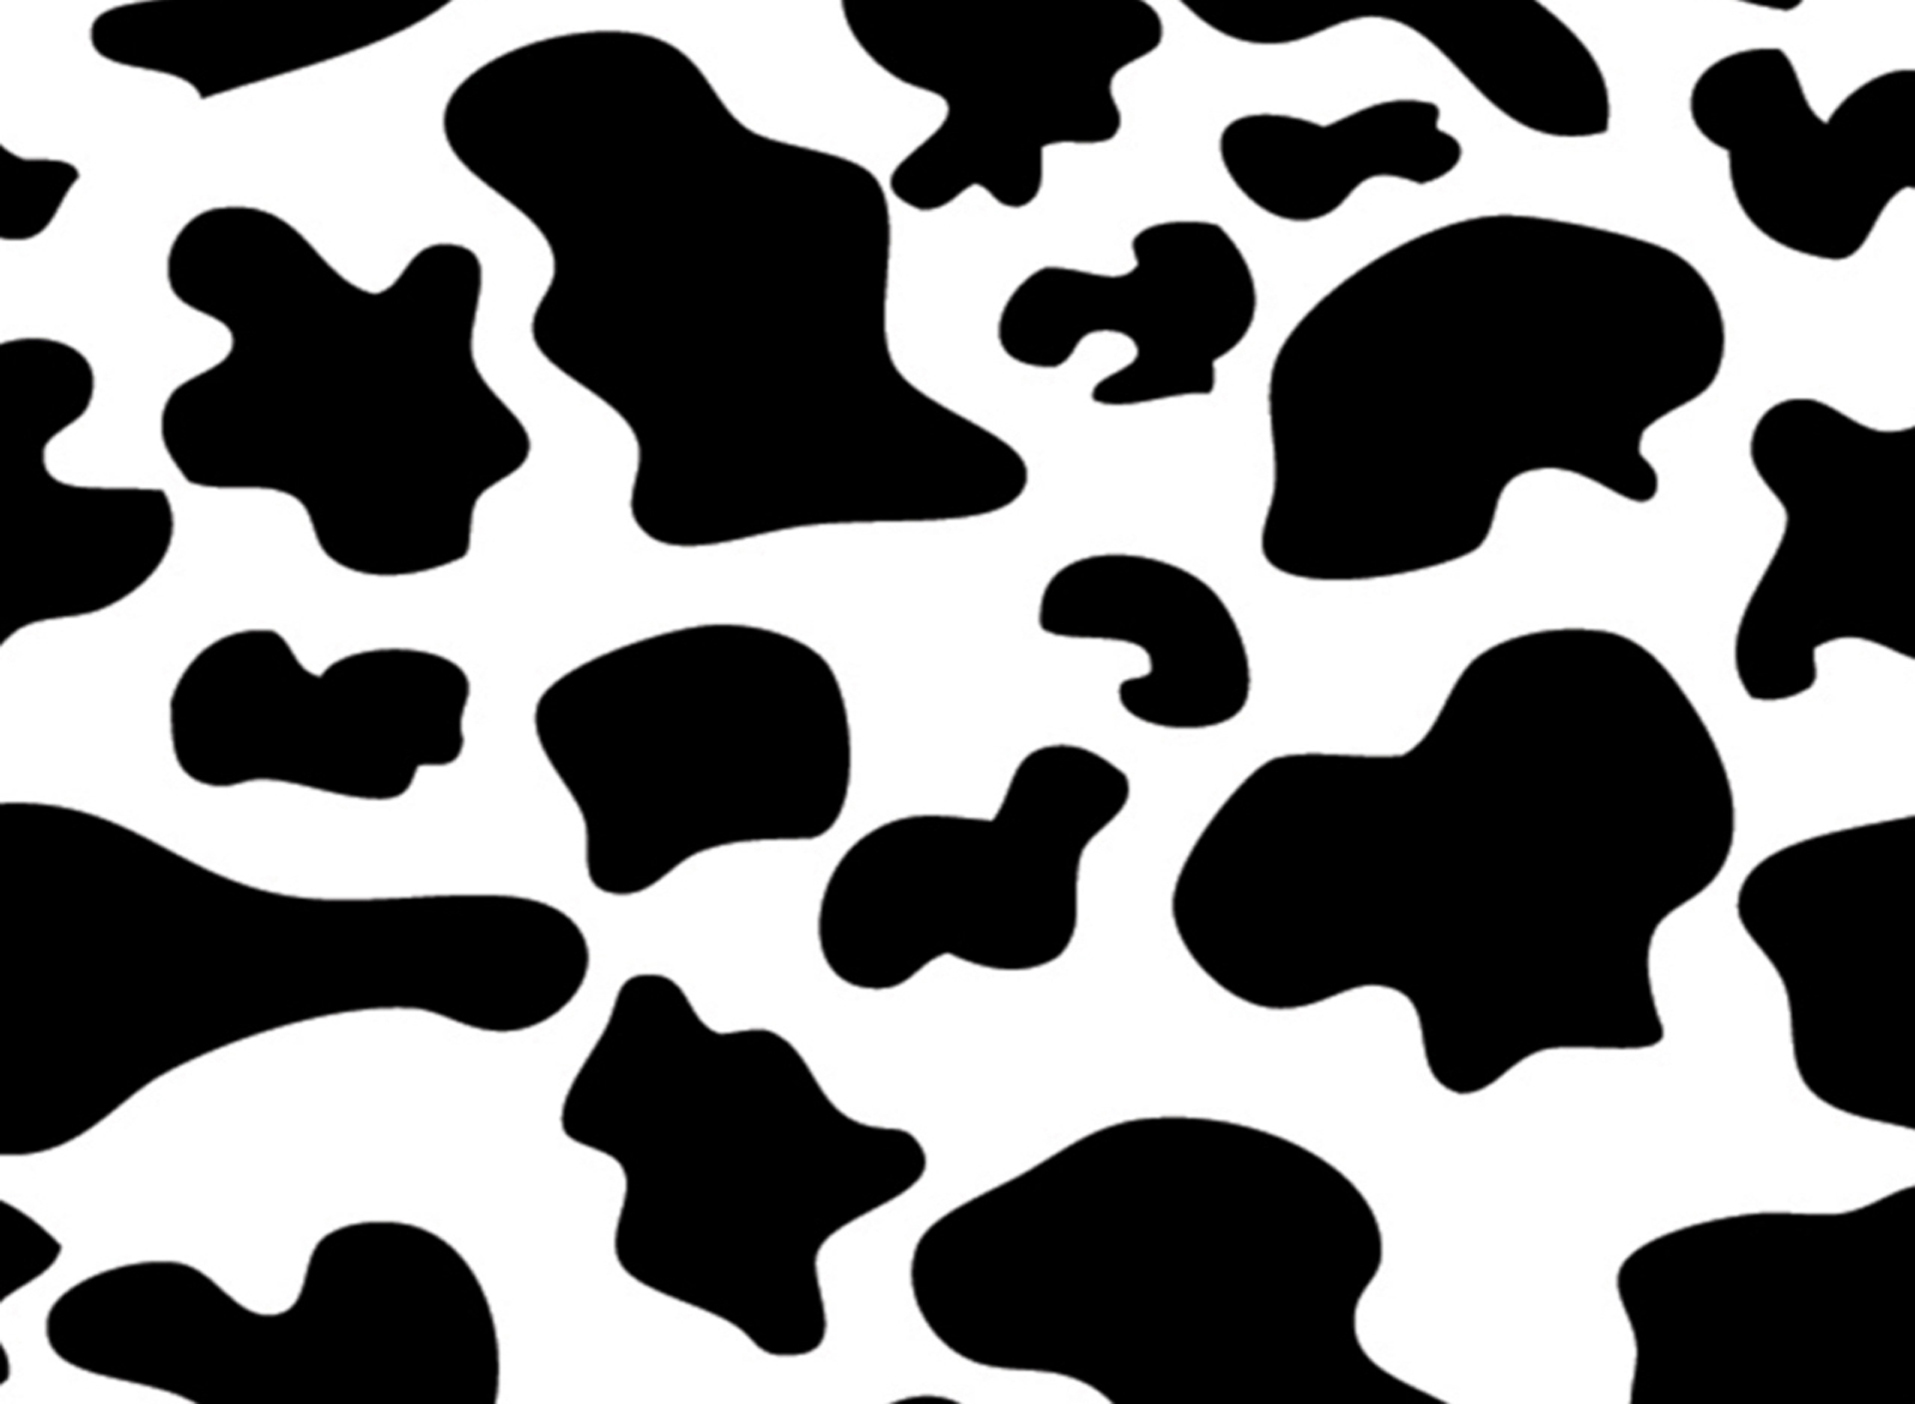 free-download-cow-pattern-cow-print-jpgbrown-cow-pattern-wallpaper